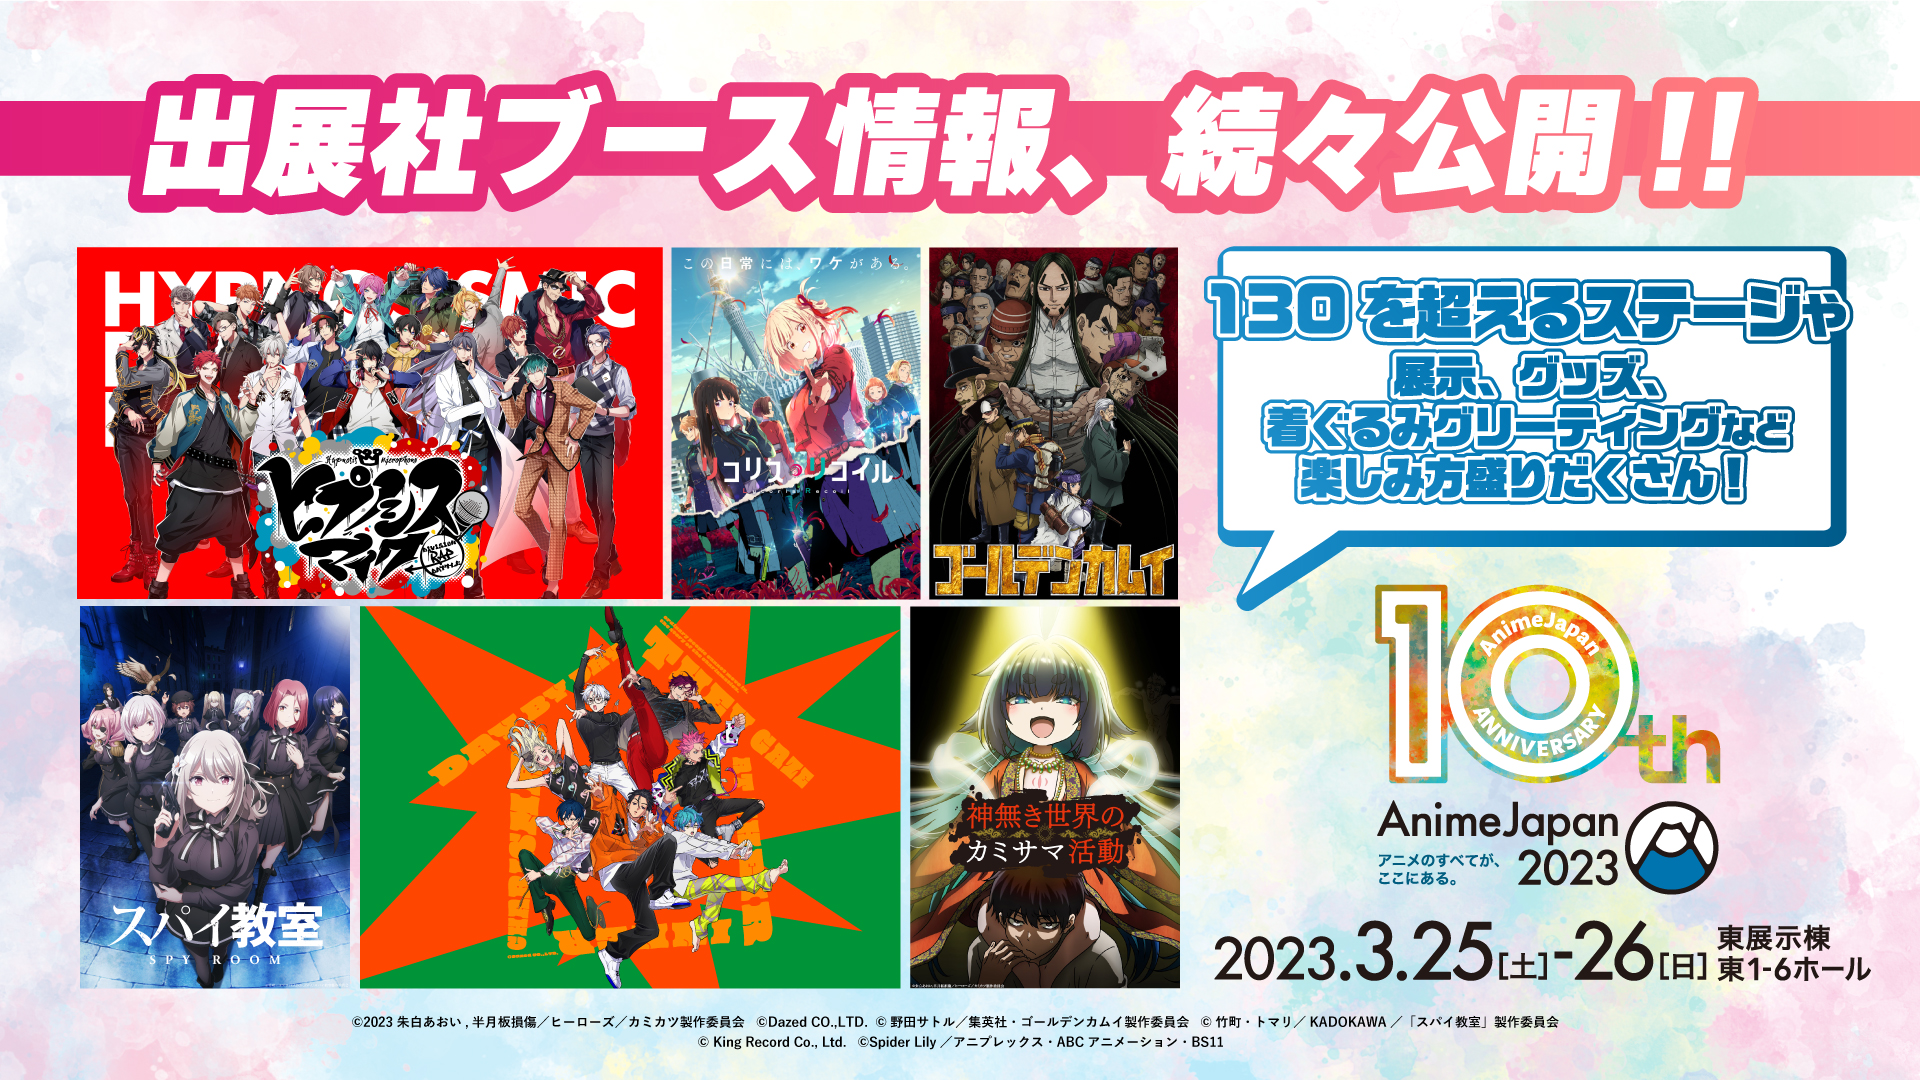 いよいよ今週末開催！ アニメイベント「AnimeJapan 2023」の全容が